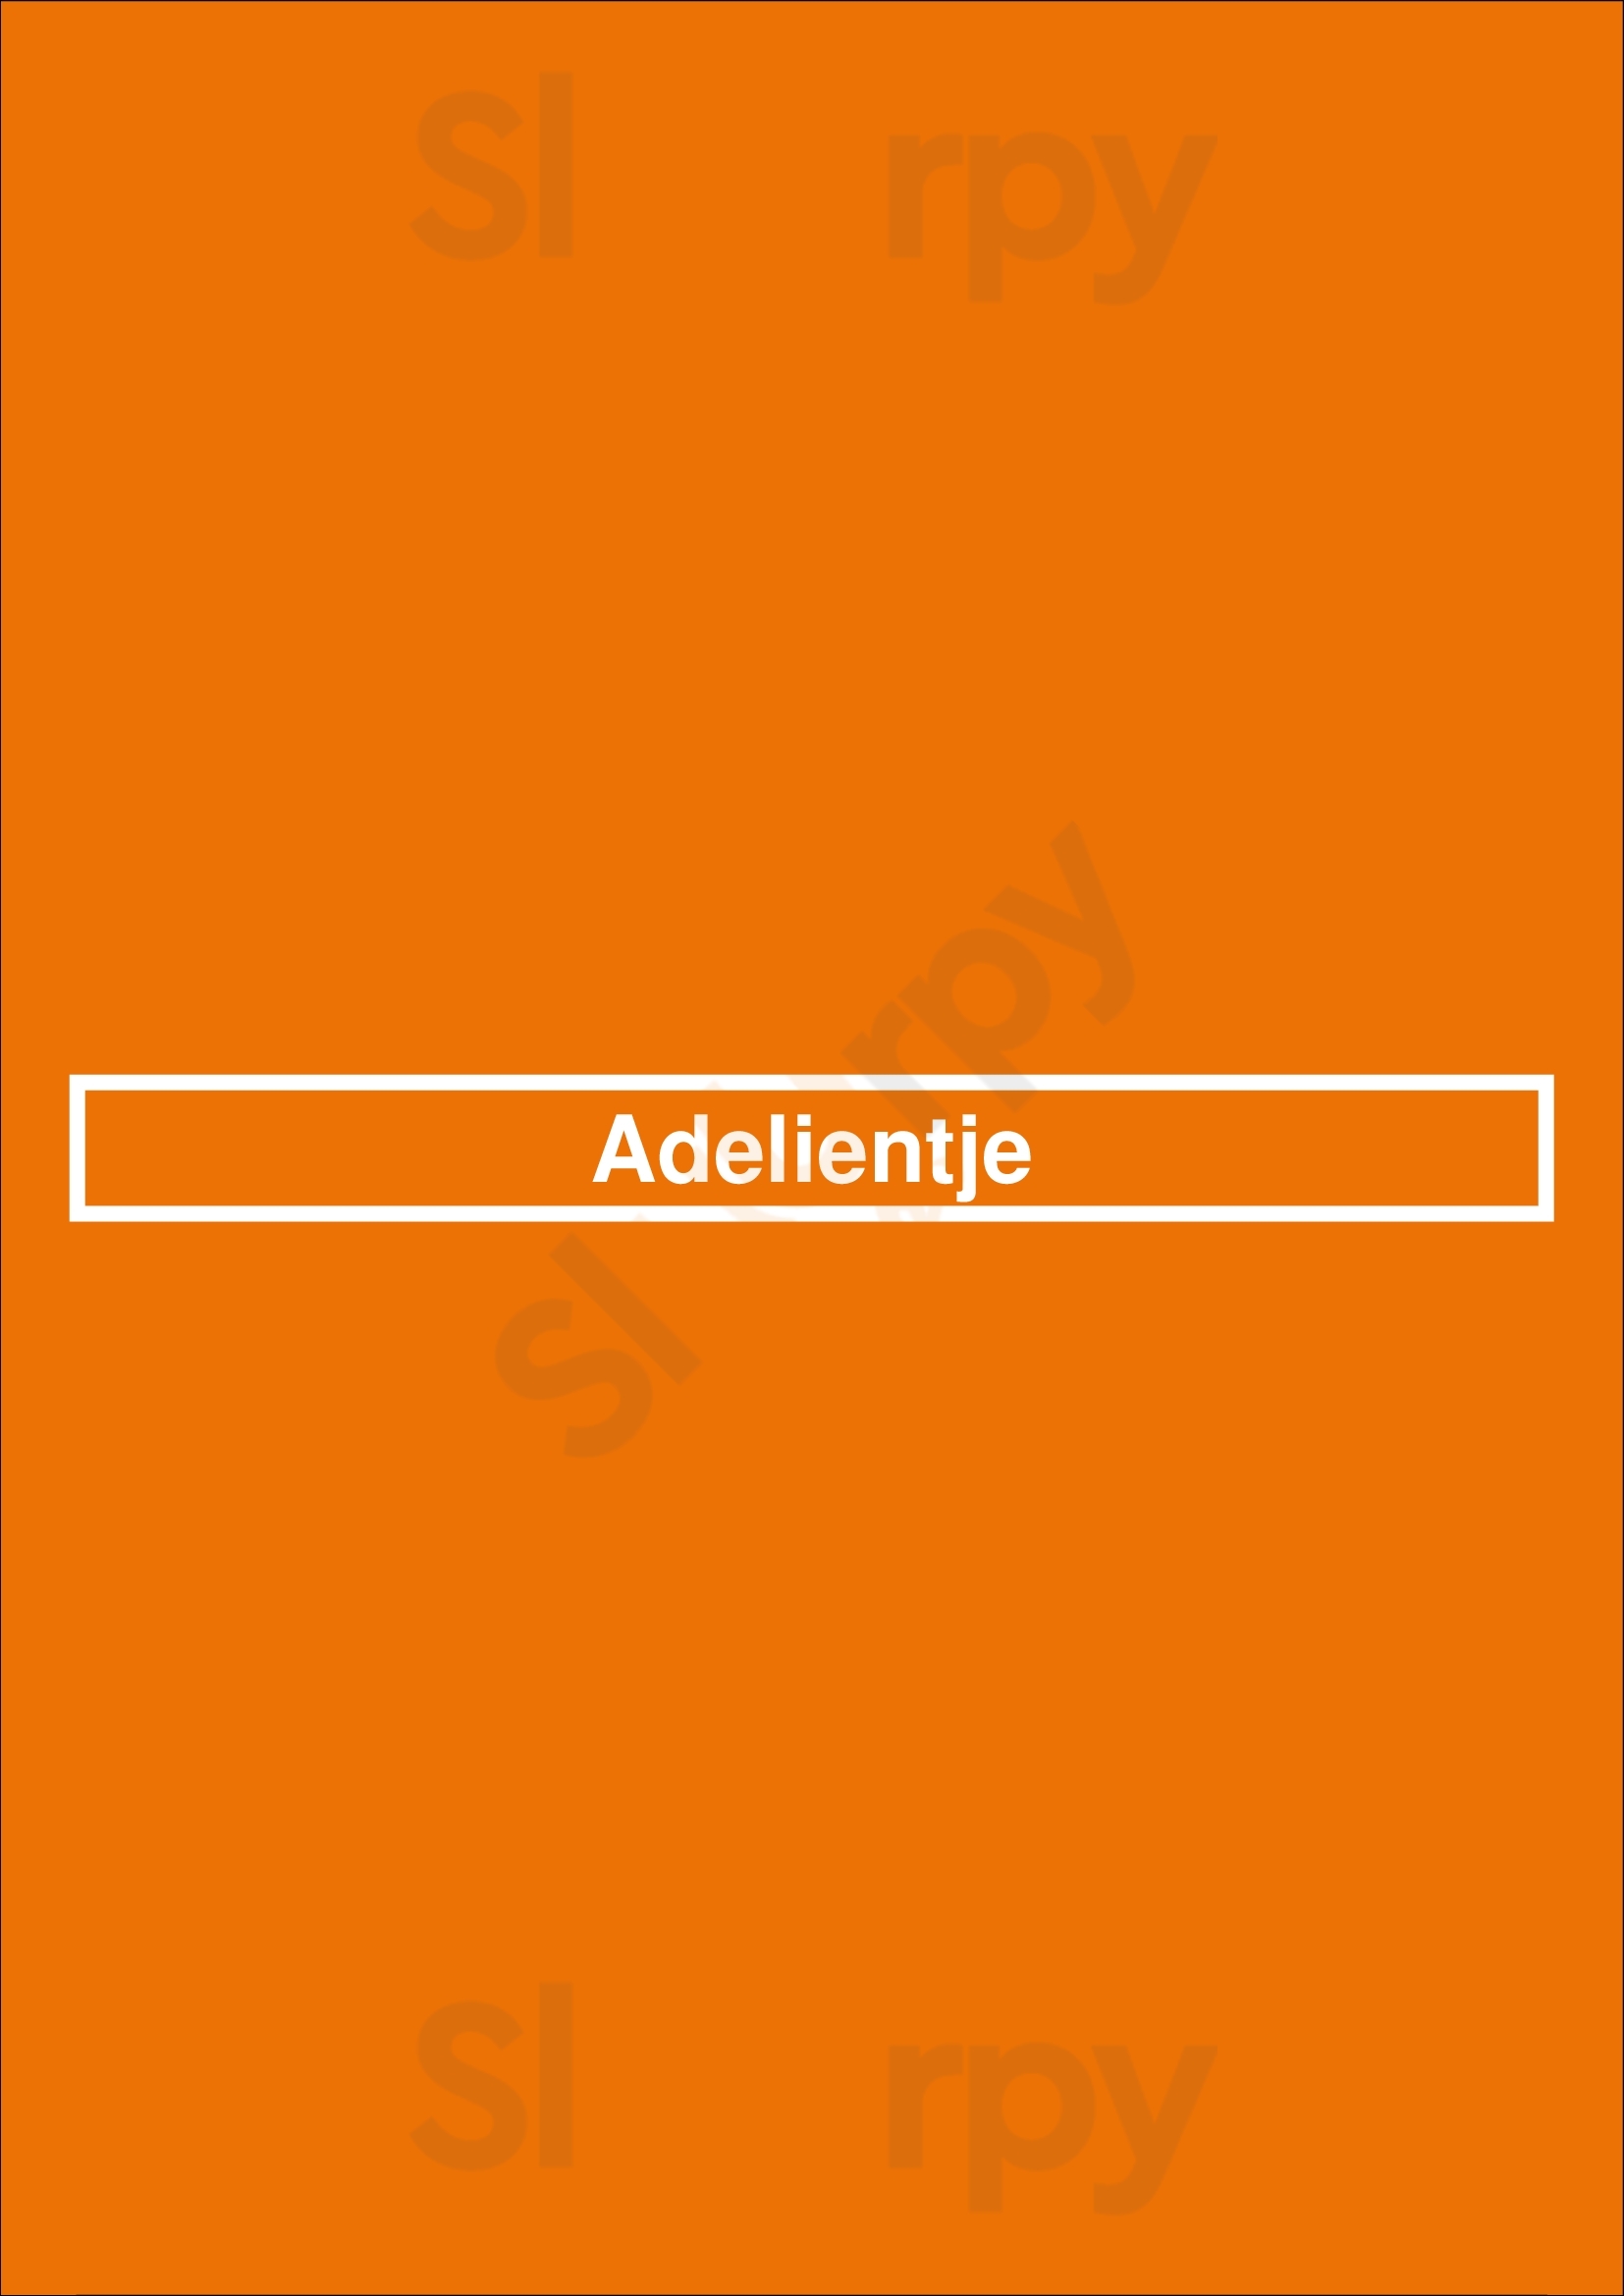 Adelientje Ostende Menu - 1